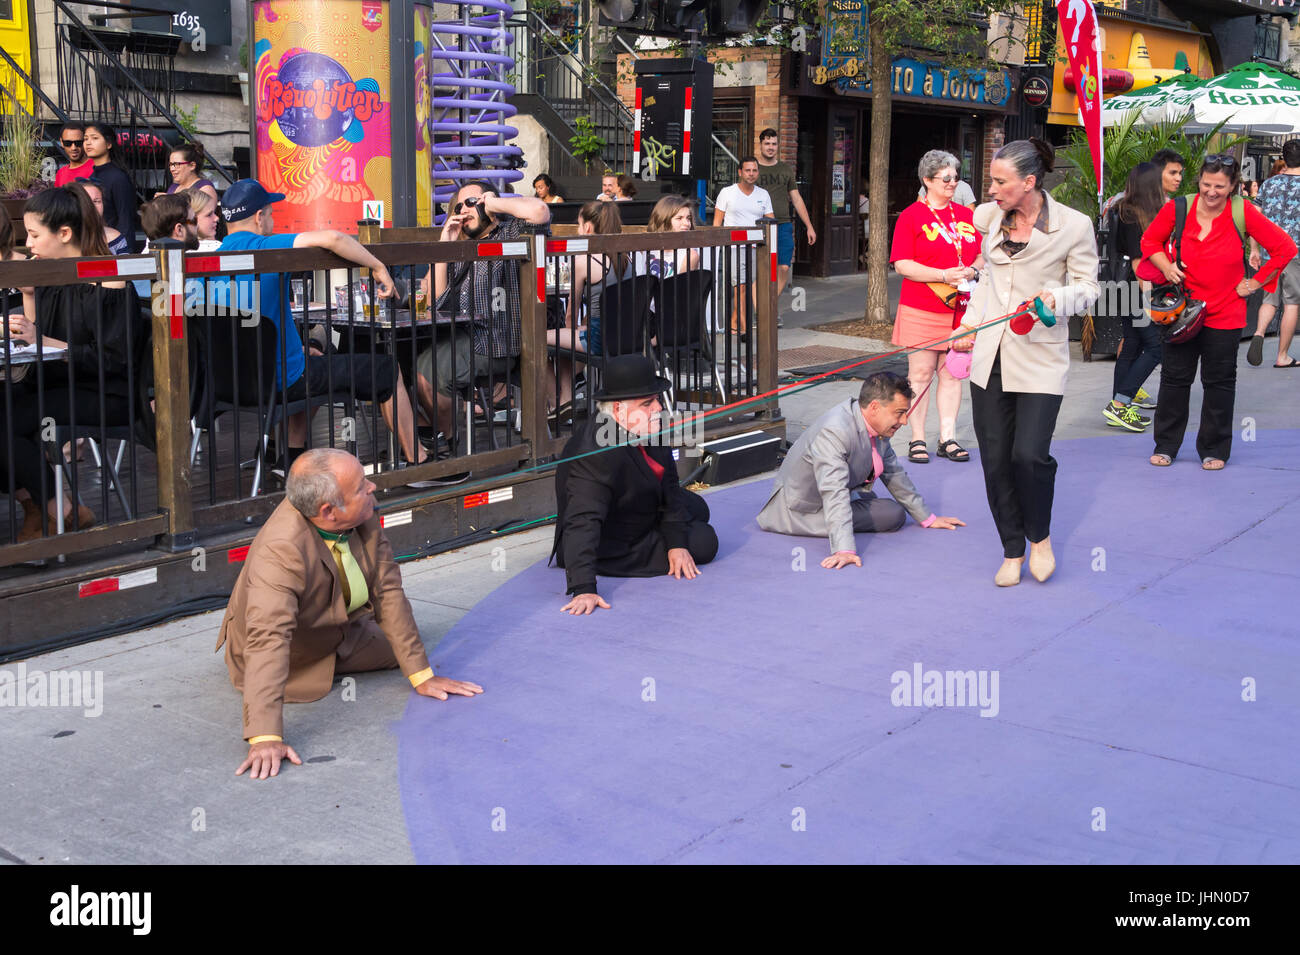 Montreal, Kanada - 13. Juli 2017: Frau zu Fuß drei Männer auf Hundeleinen im Circus-Festival von Montreal Stockfoto